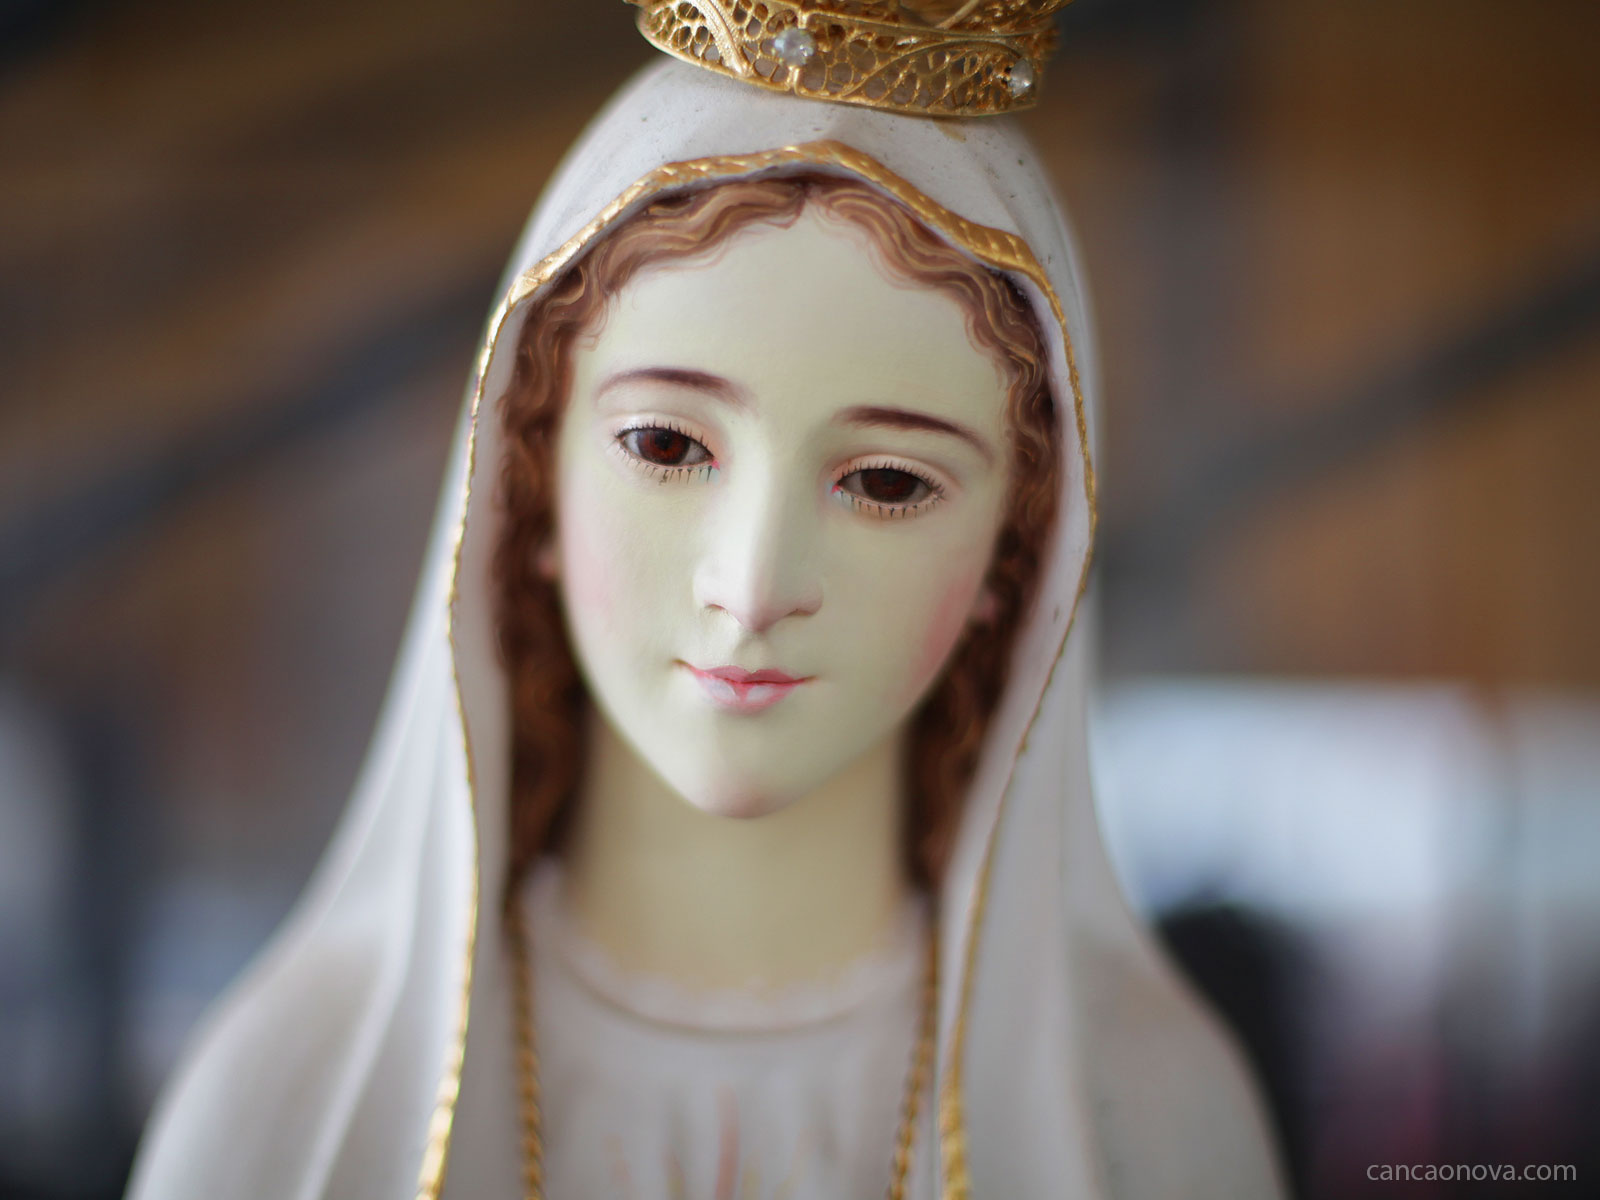 Sábado é dia dedicado à Virgem Maria, nossa mãe